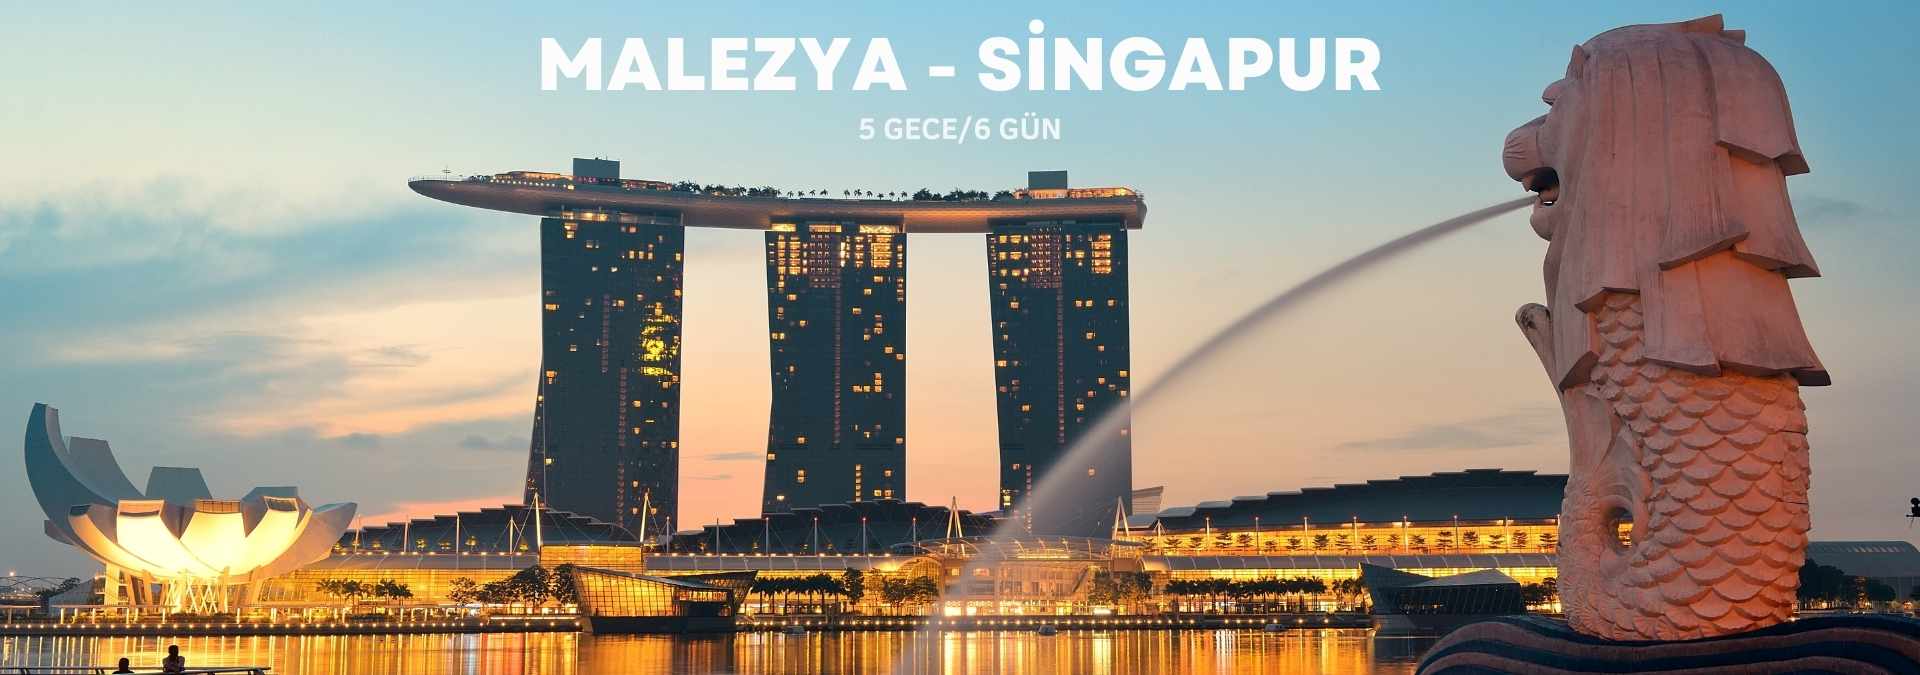 Malezya Singapur Turu Uzakdoğu Turları